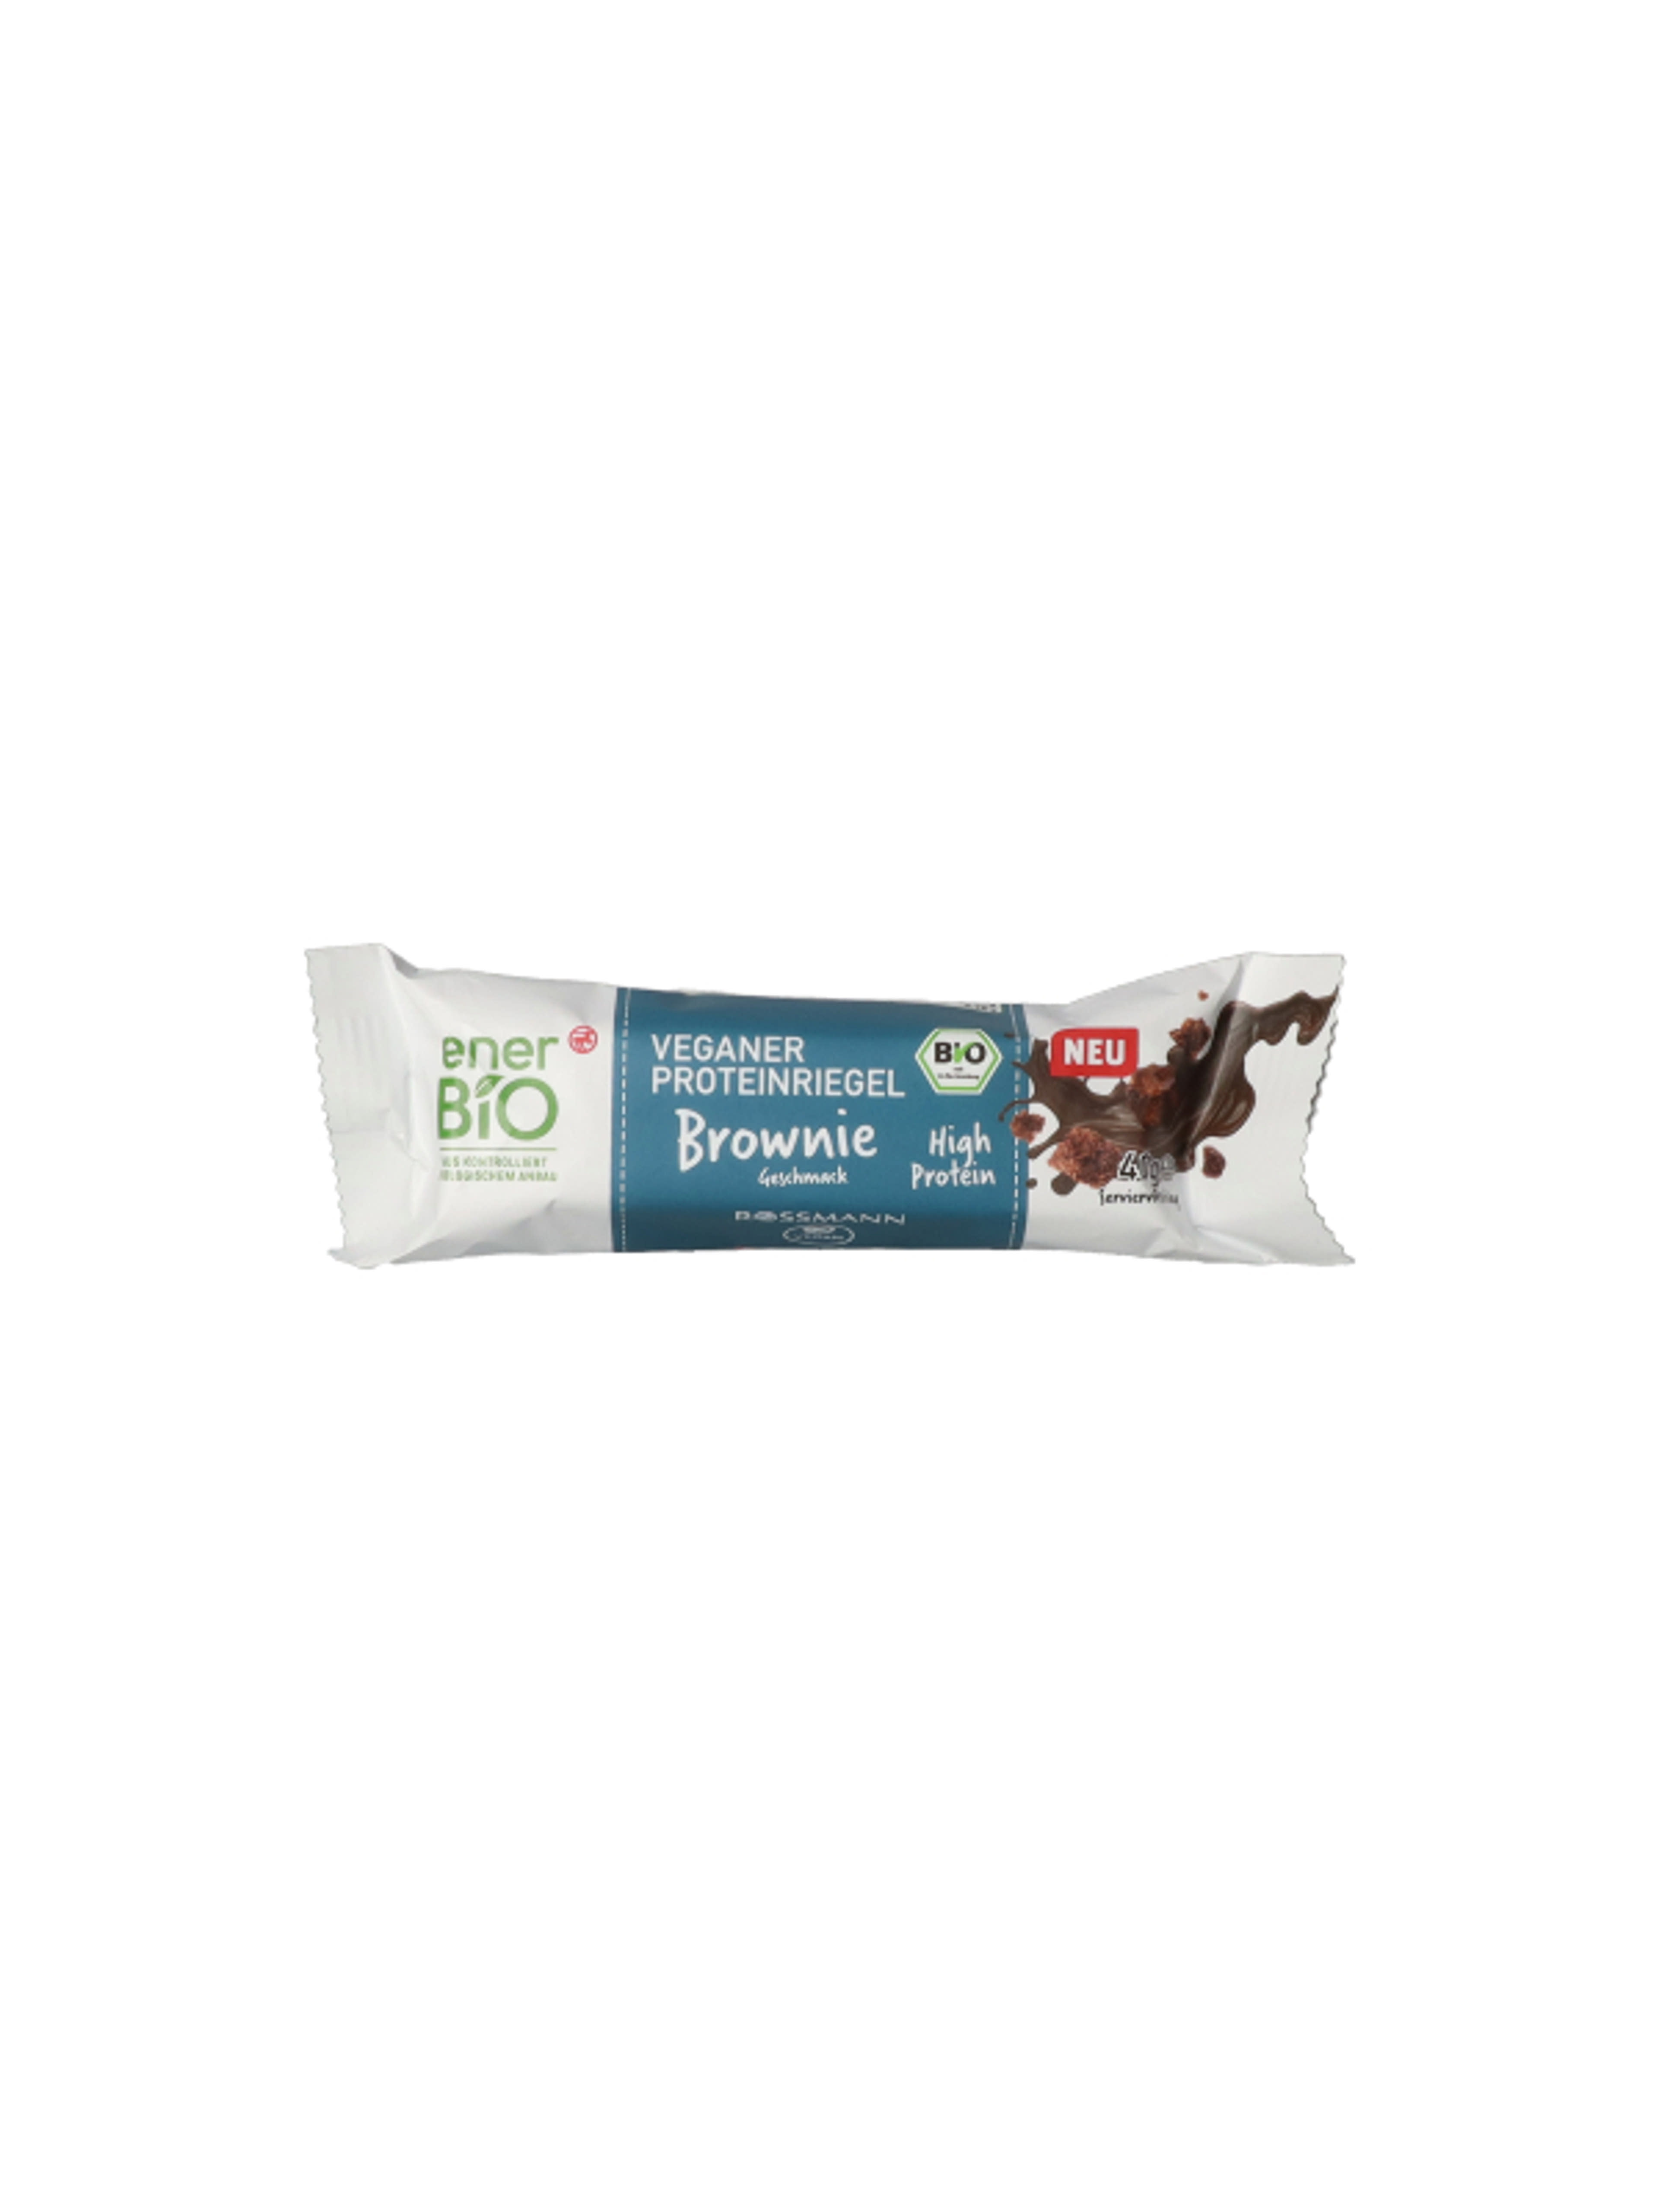 Ener-bio fehérjeszelet, csokoládé & brownie ízesítésű - 40 g-1